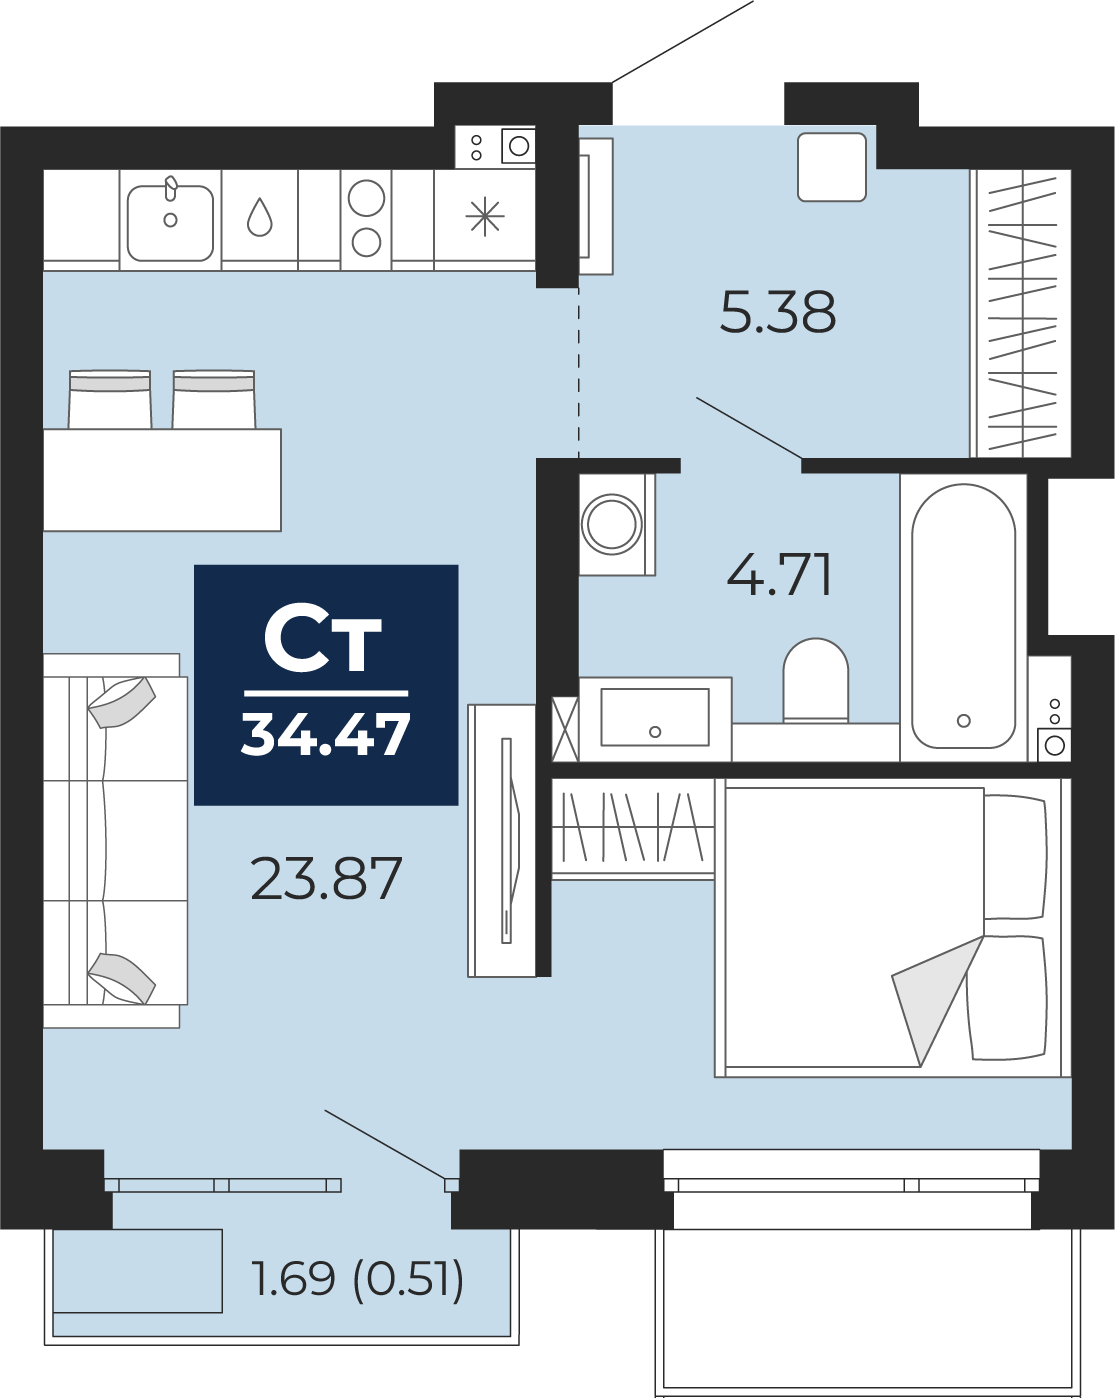 Квартира № 331, Студия, 34.47 кв. м, 2 этаж